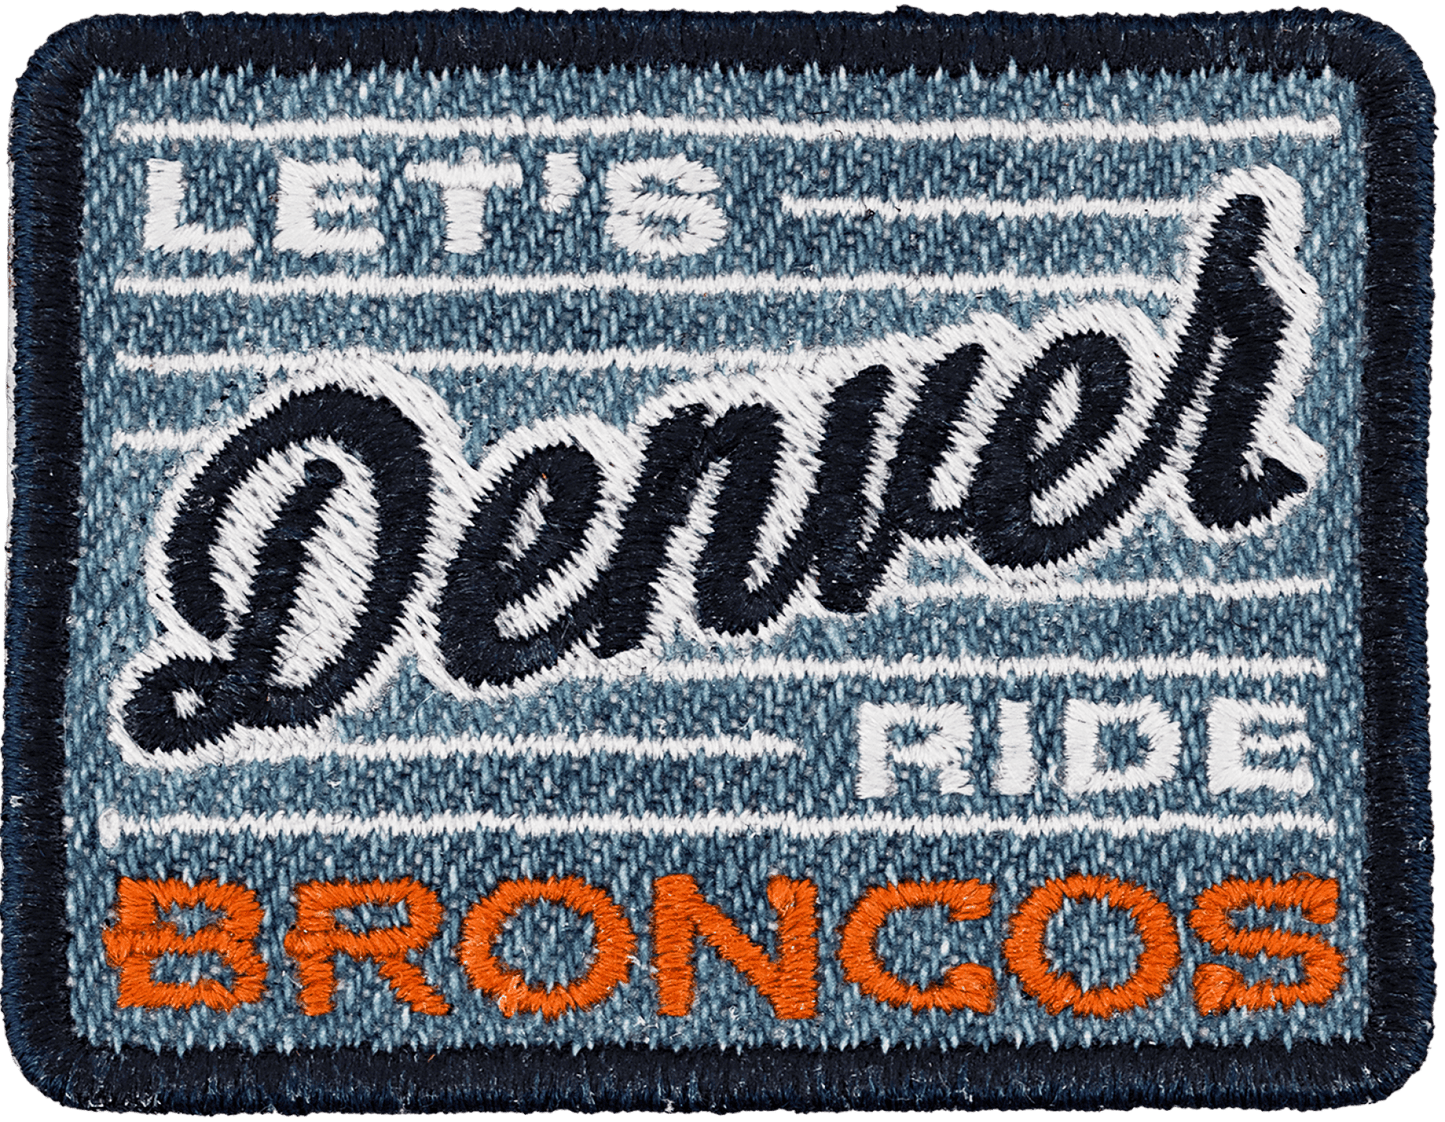 Denver Broncos Patch (Pre-Order)